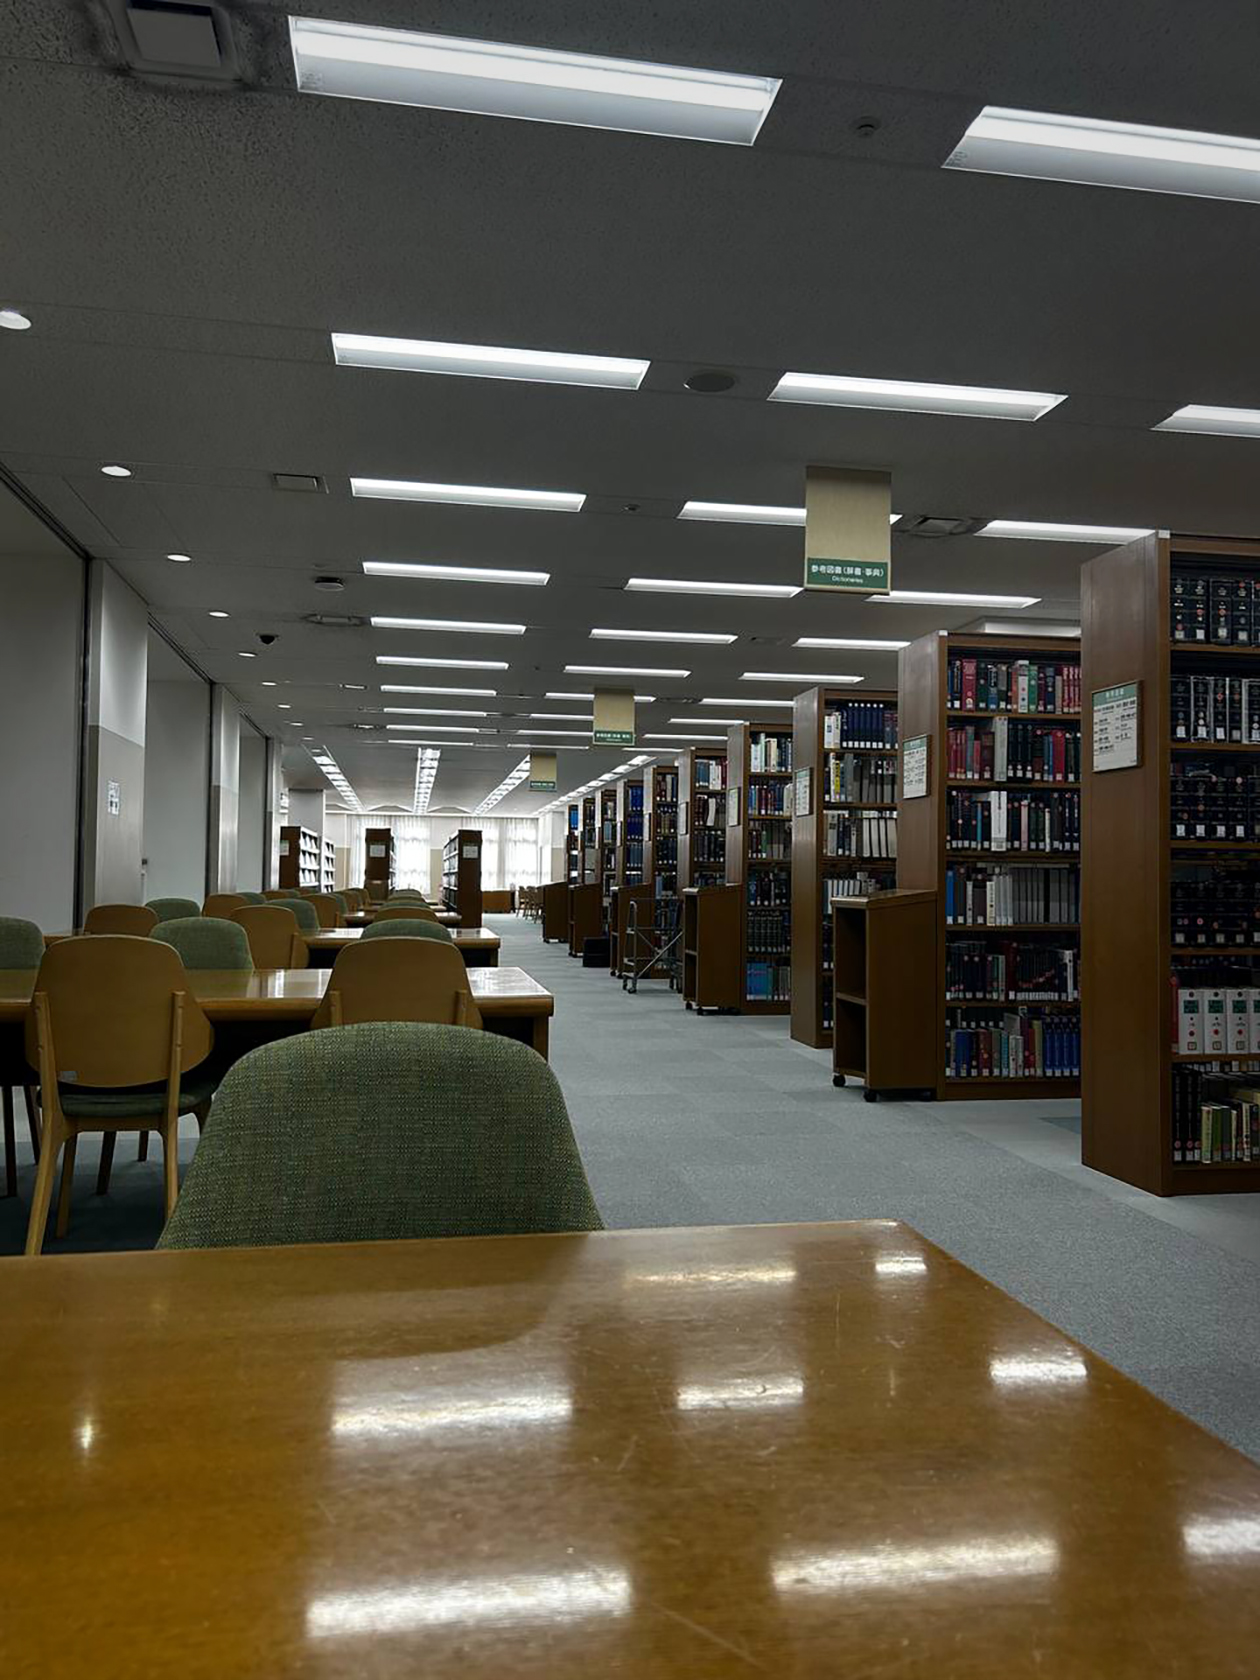 У университета огромная библиотека, где есть как научная, так и художественная литература. Я несколько раз оставалась там почитать